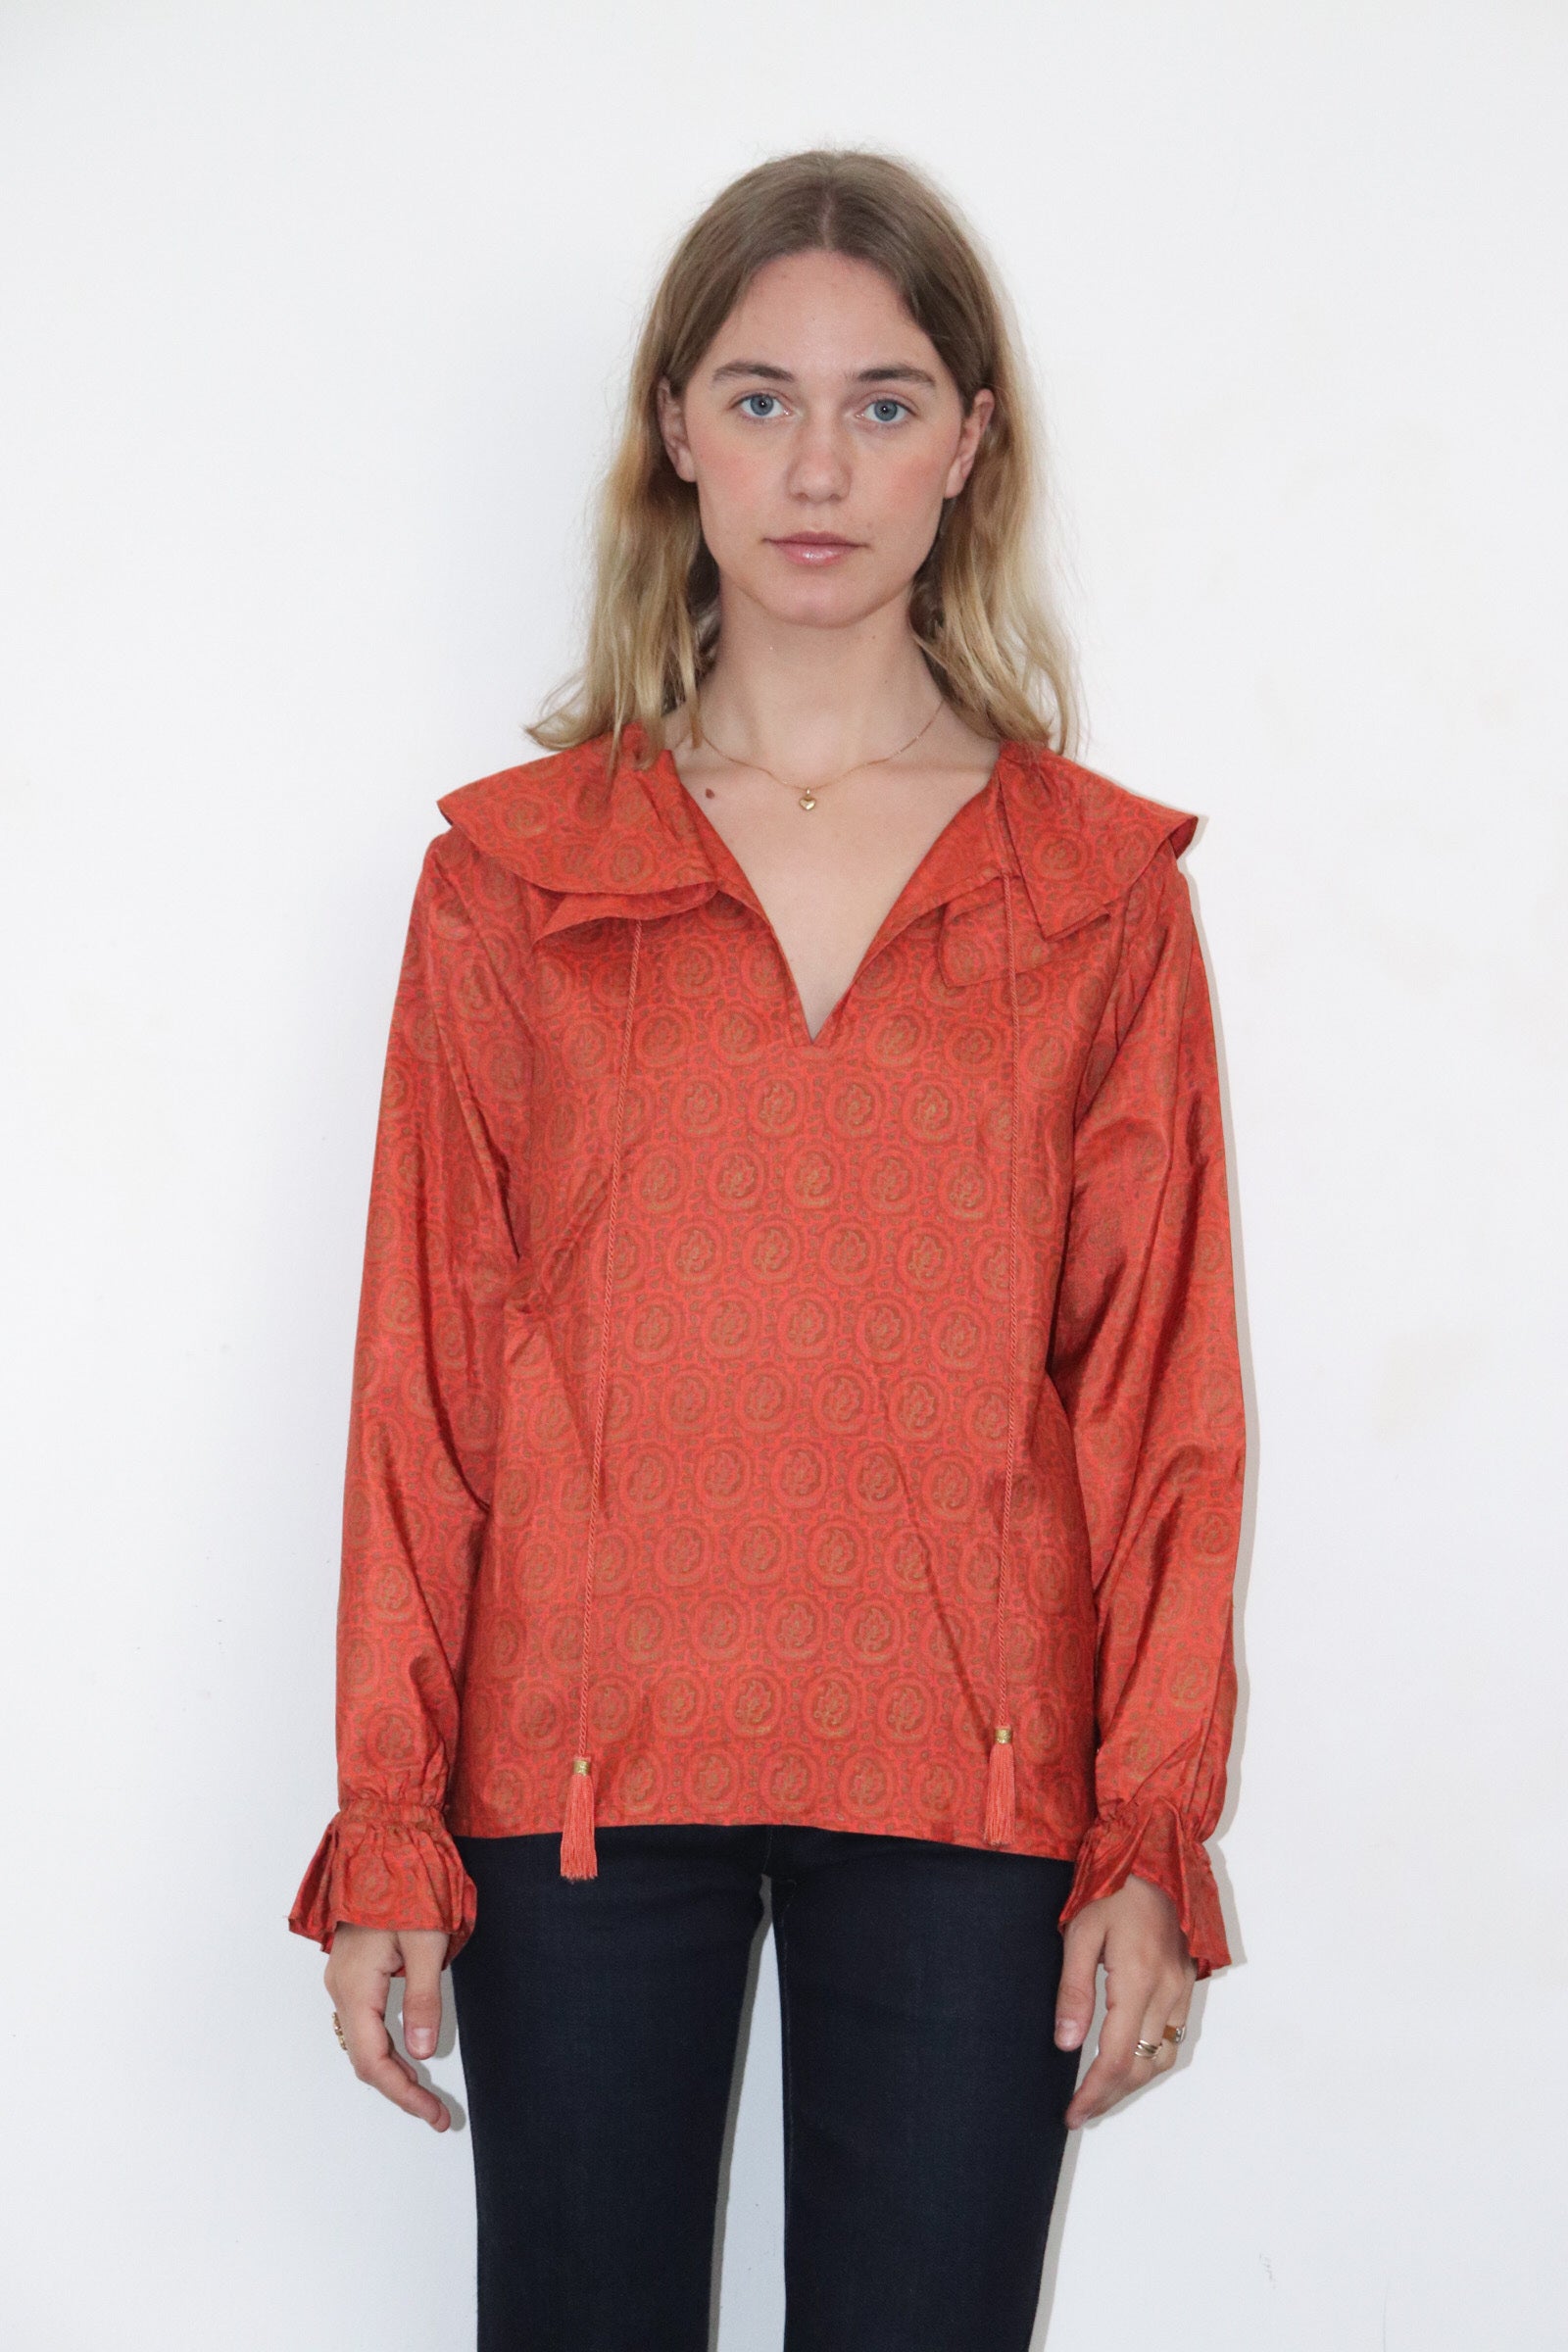 Yves Saint Laurent orange shirt